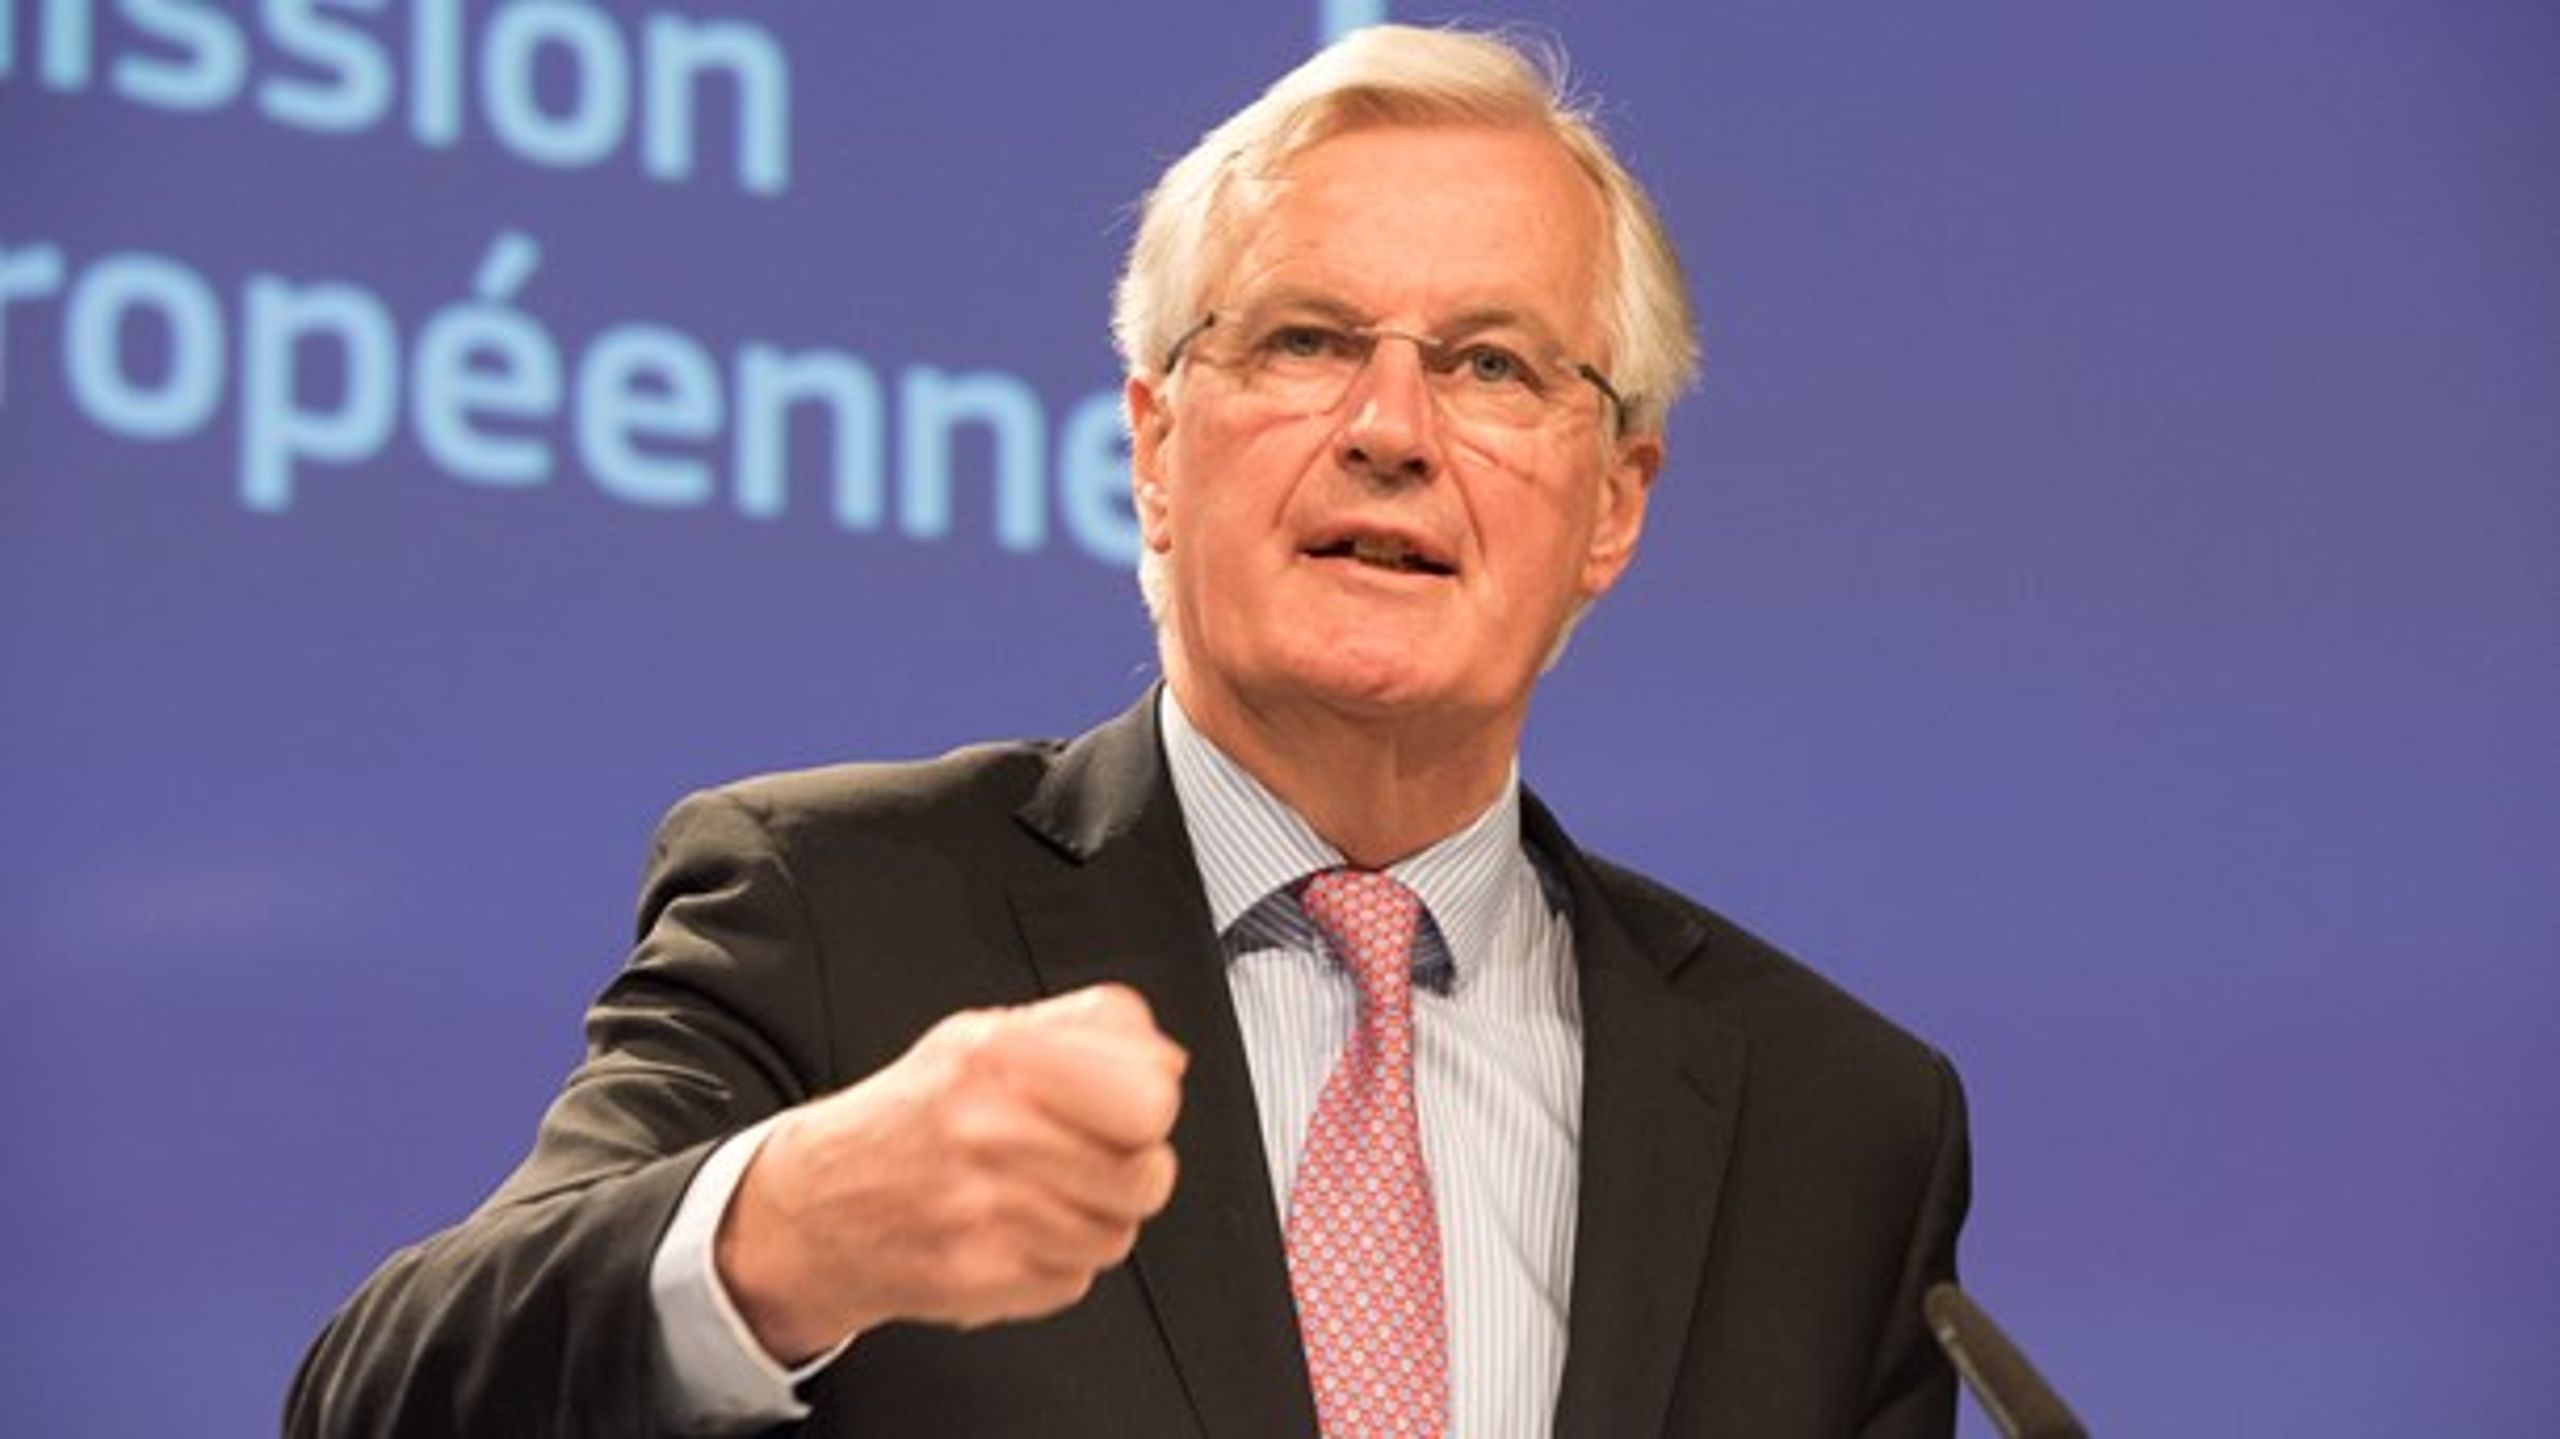 EU:s brexitförhandlare Michel Barnier